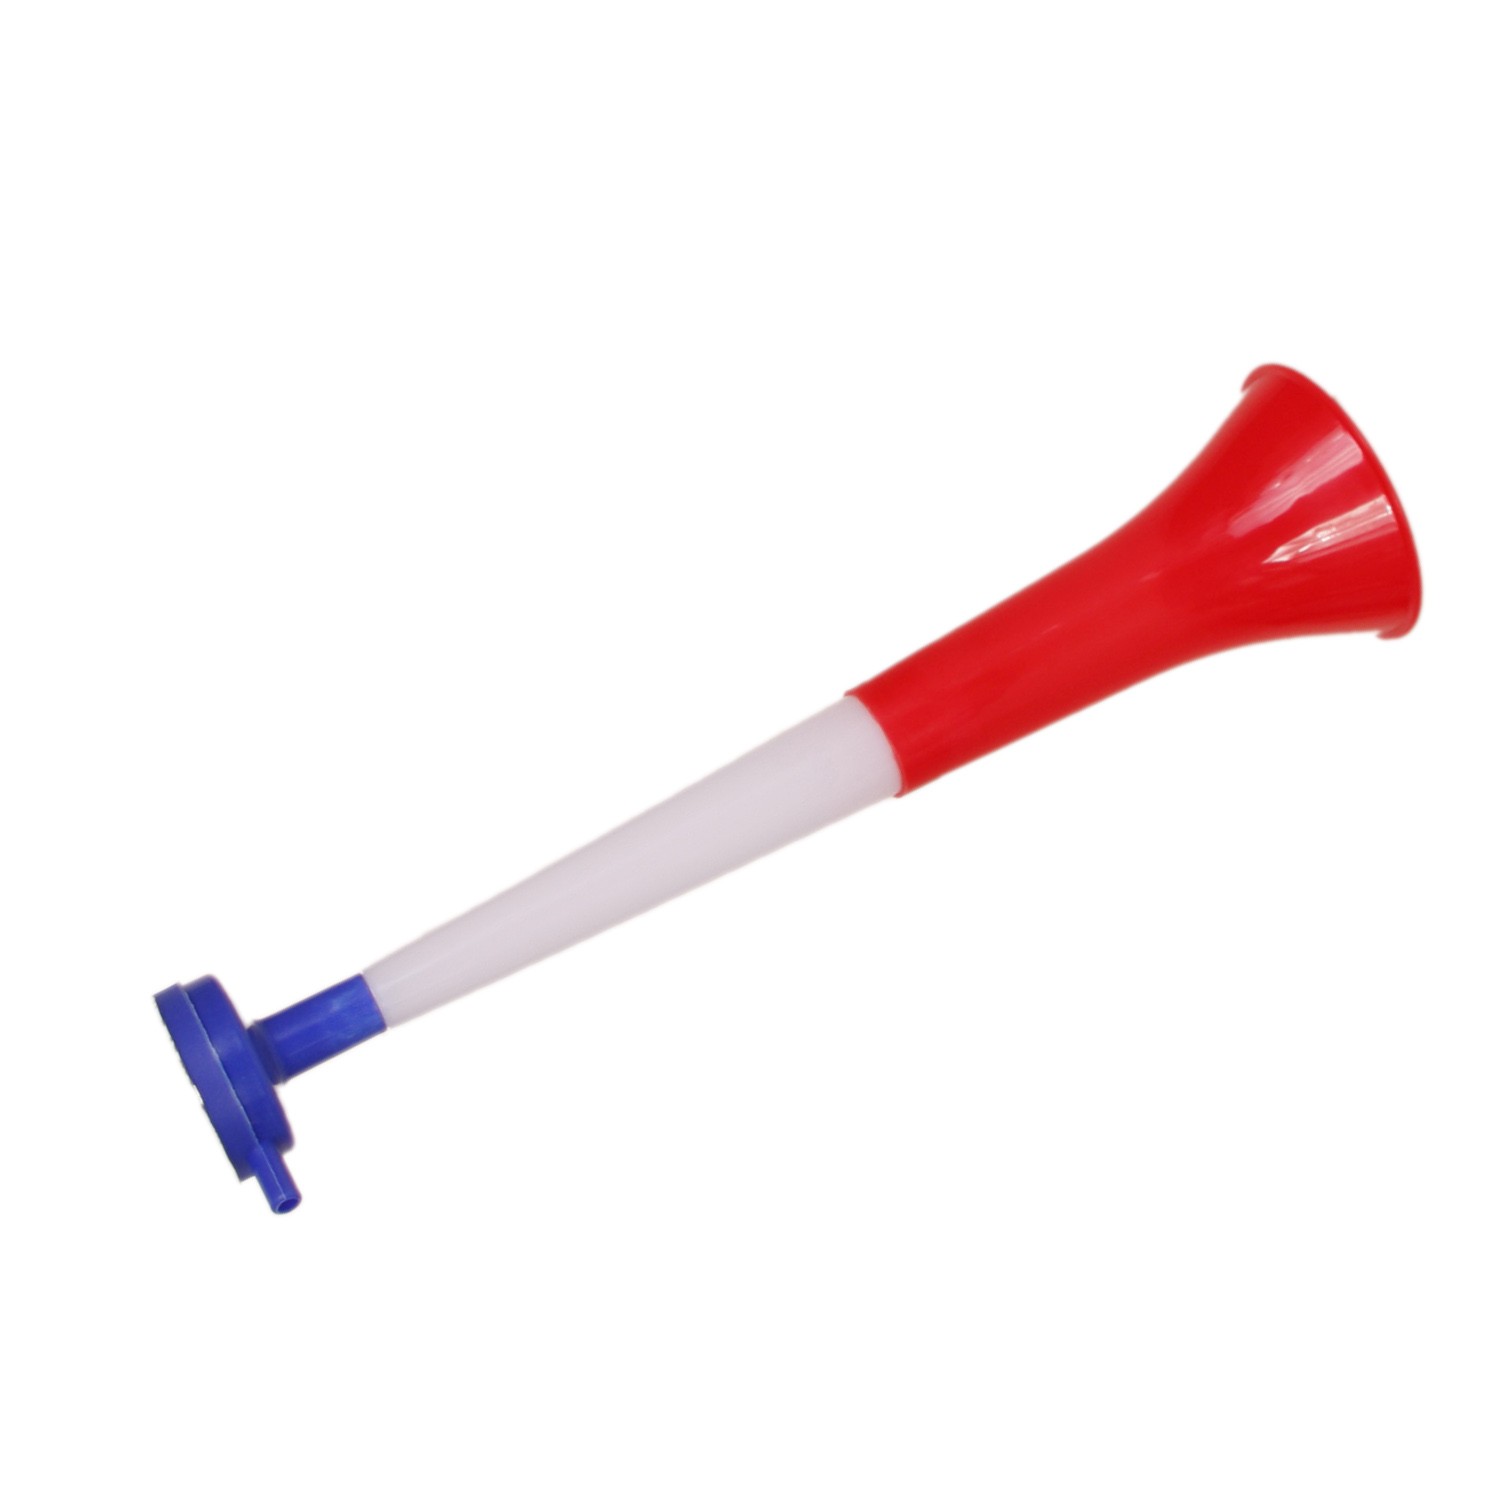 https://www.decors-du-monde.com/5334/vuvuzela-30cm.jpg